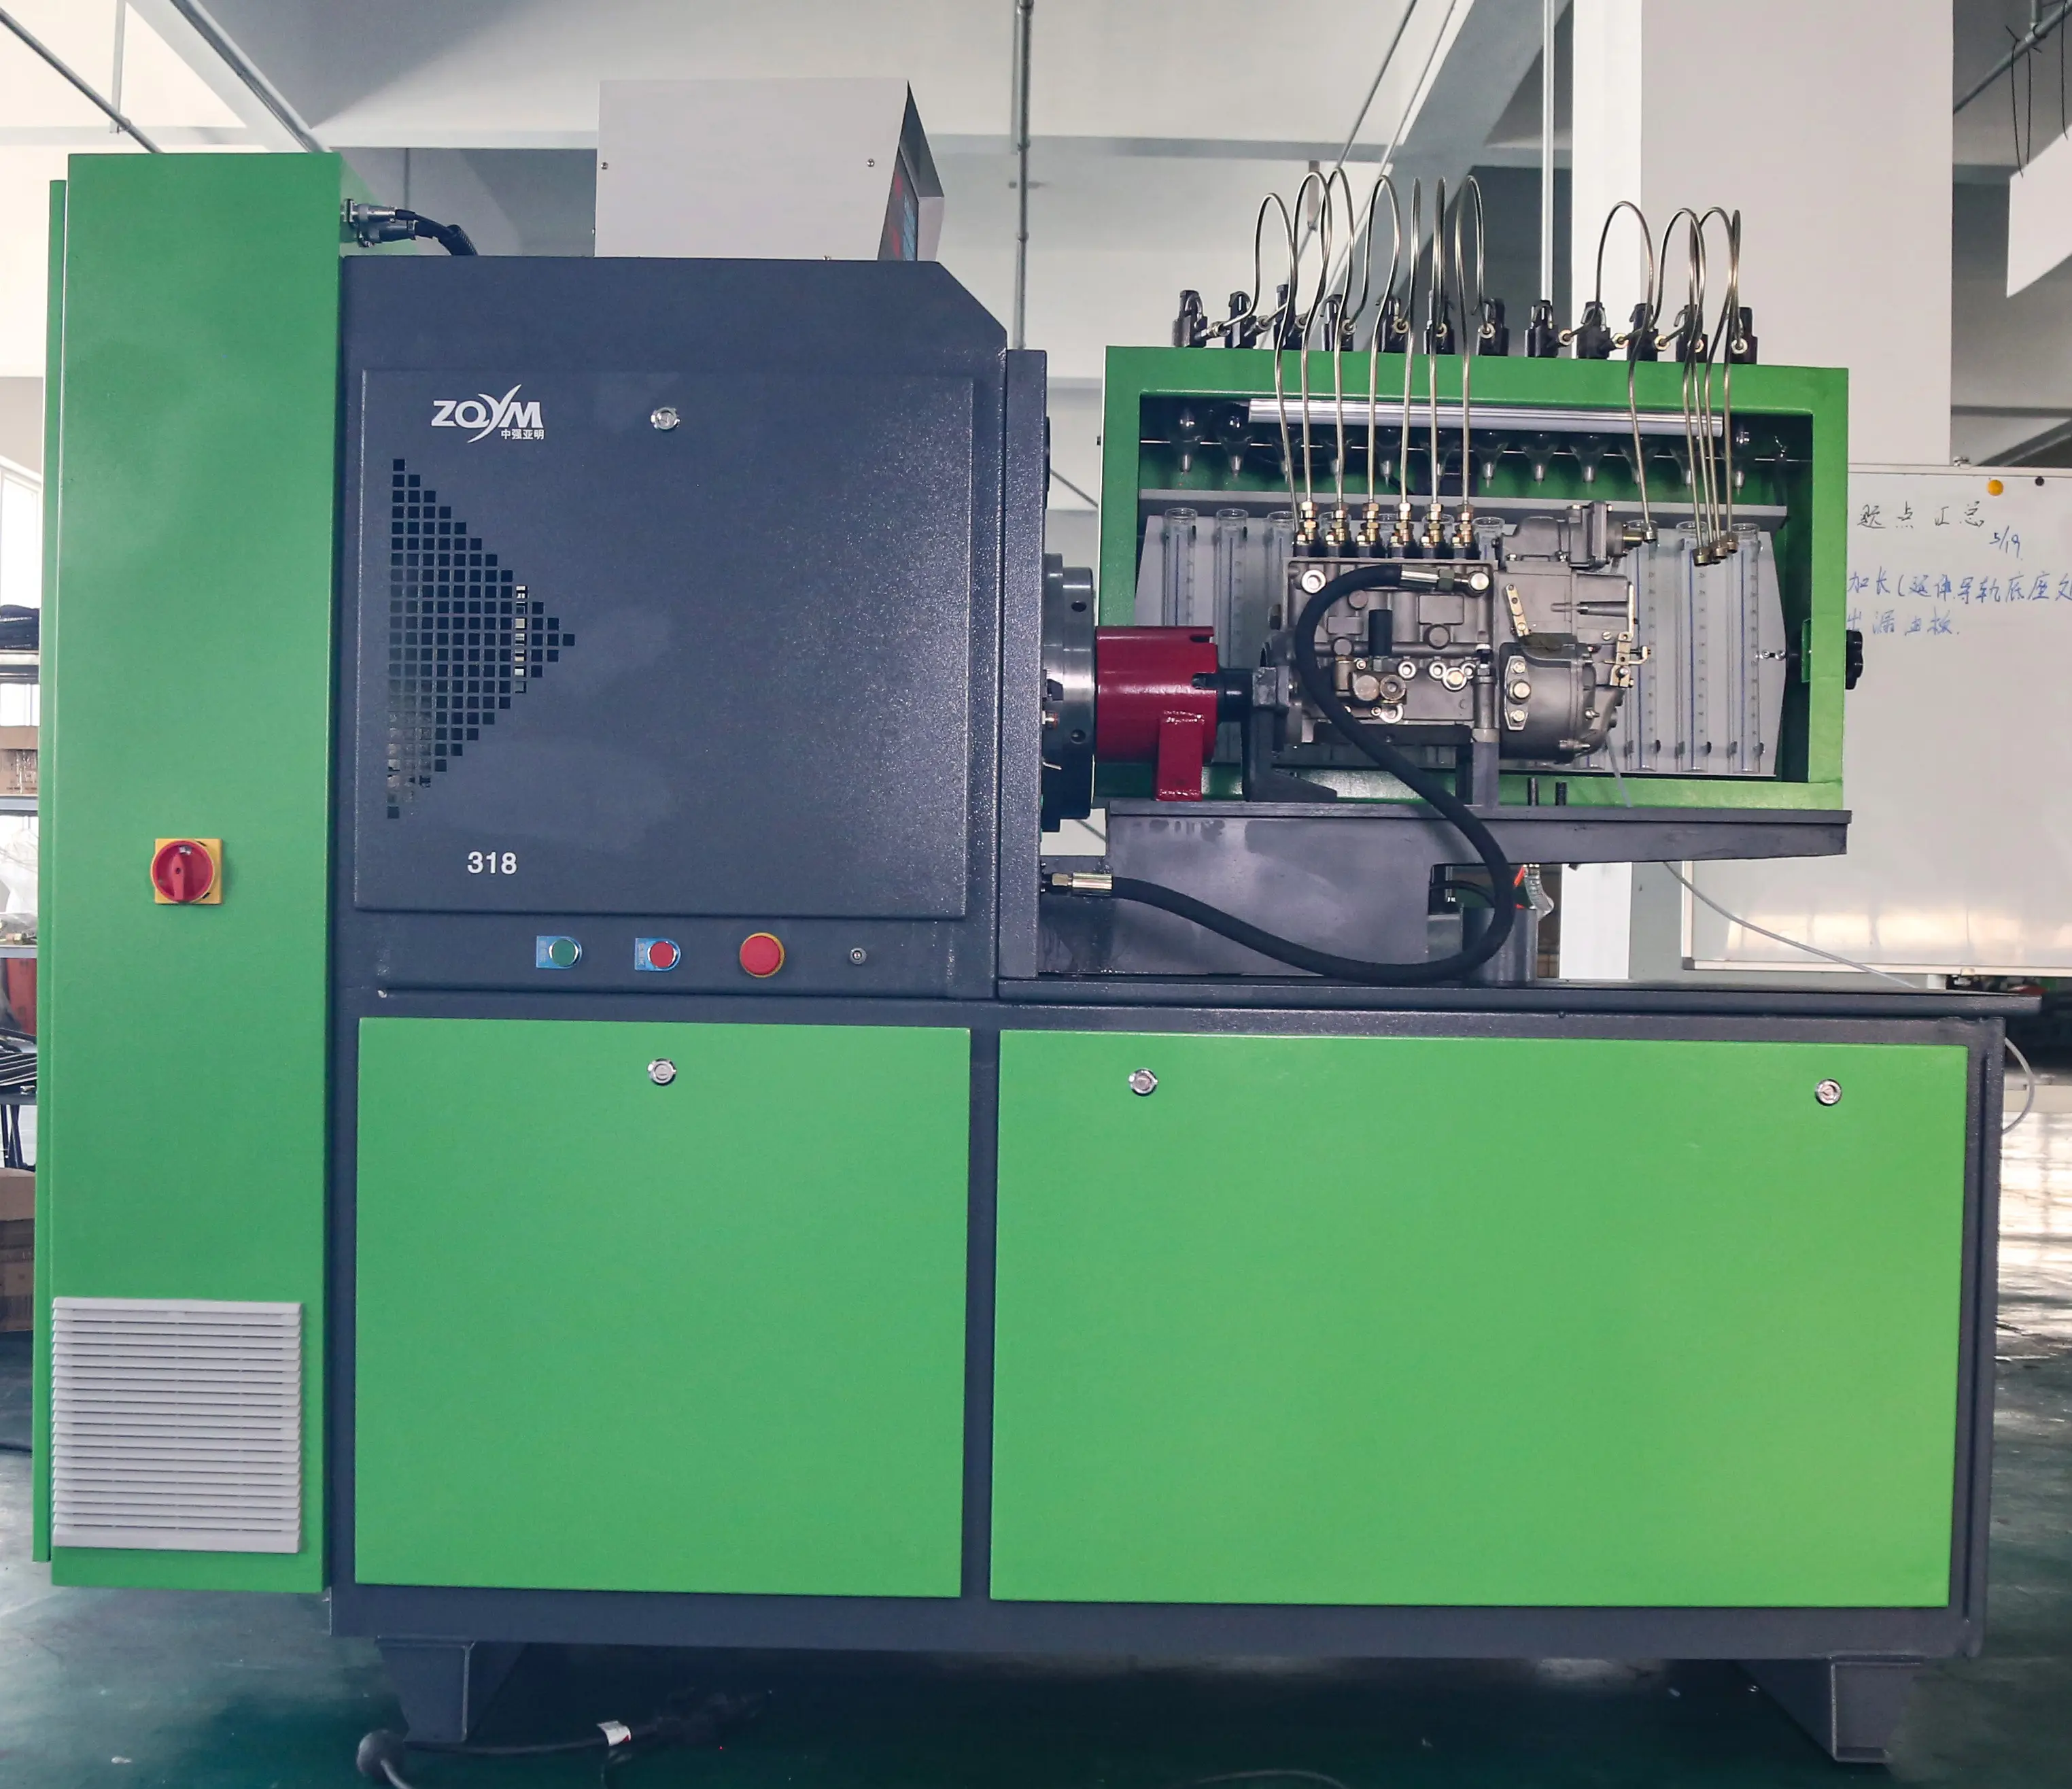 ZQYM dizel yakıt mekanik pompa dizel test cihazı yakıt enjeksiyon pompası inceleme ekipmanı test tezgahı